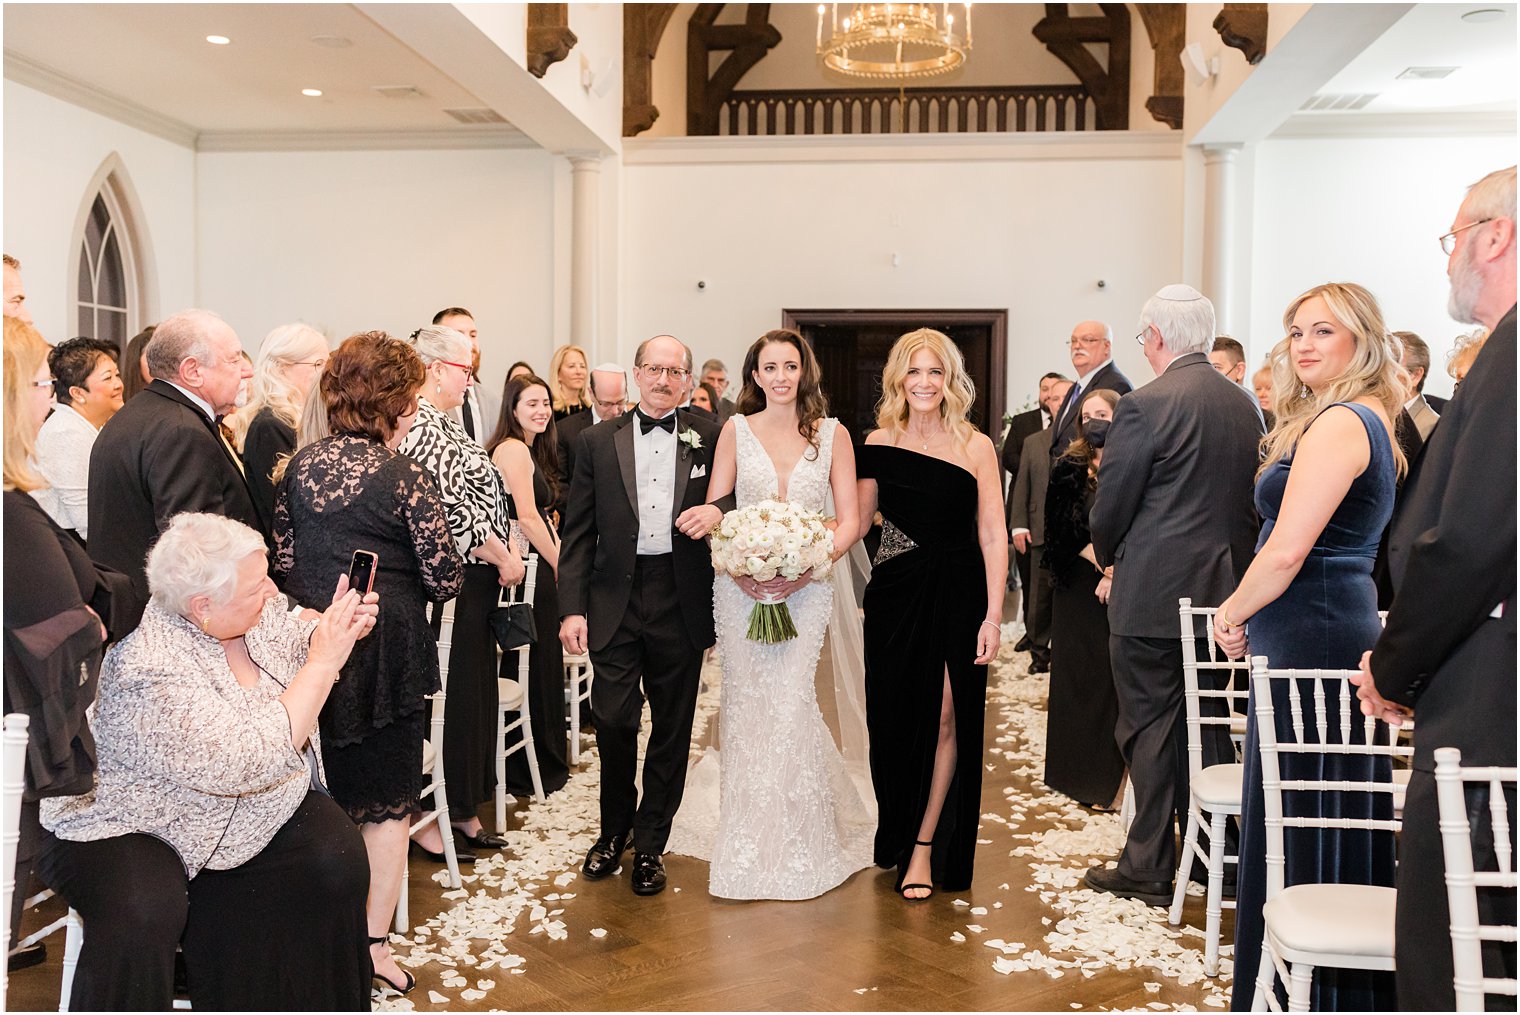 parents walk bride down aisle for wedding ceremony at Park Chateau Estate 